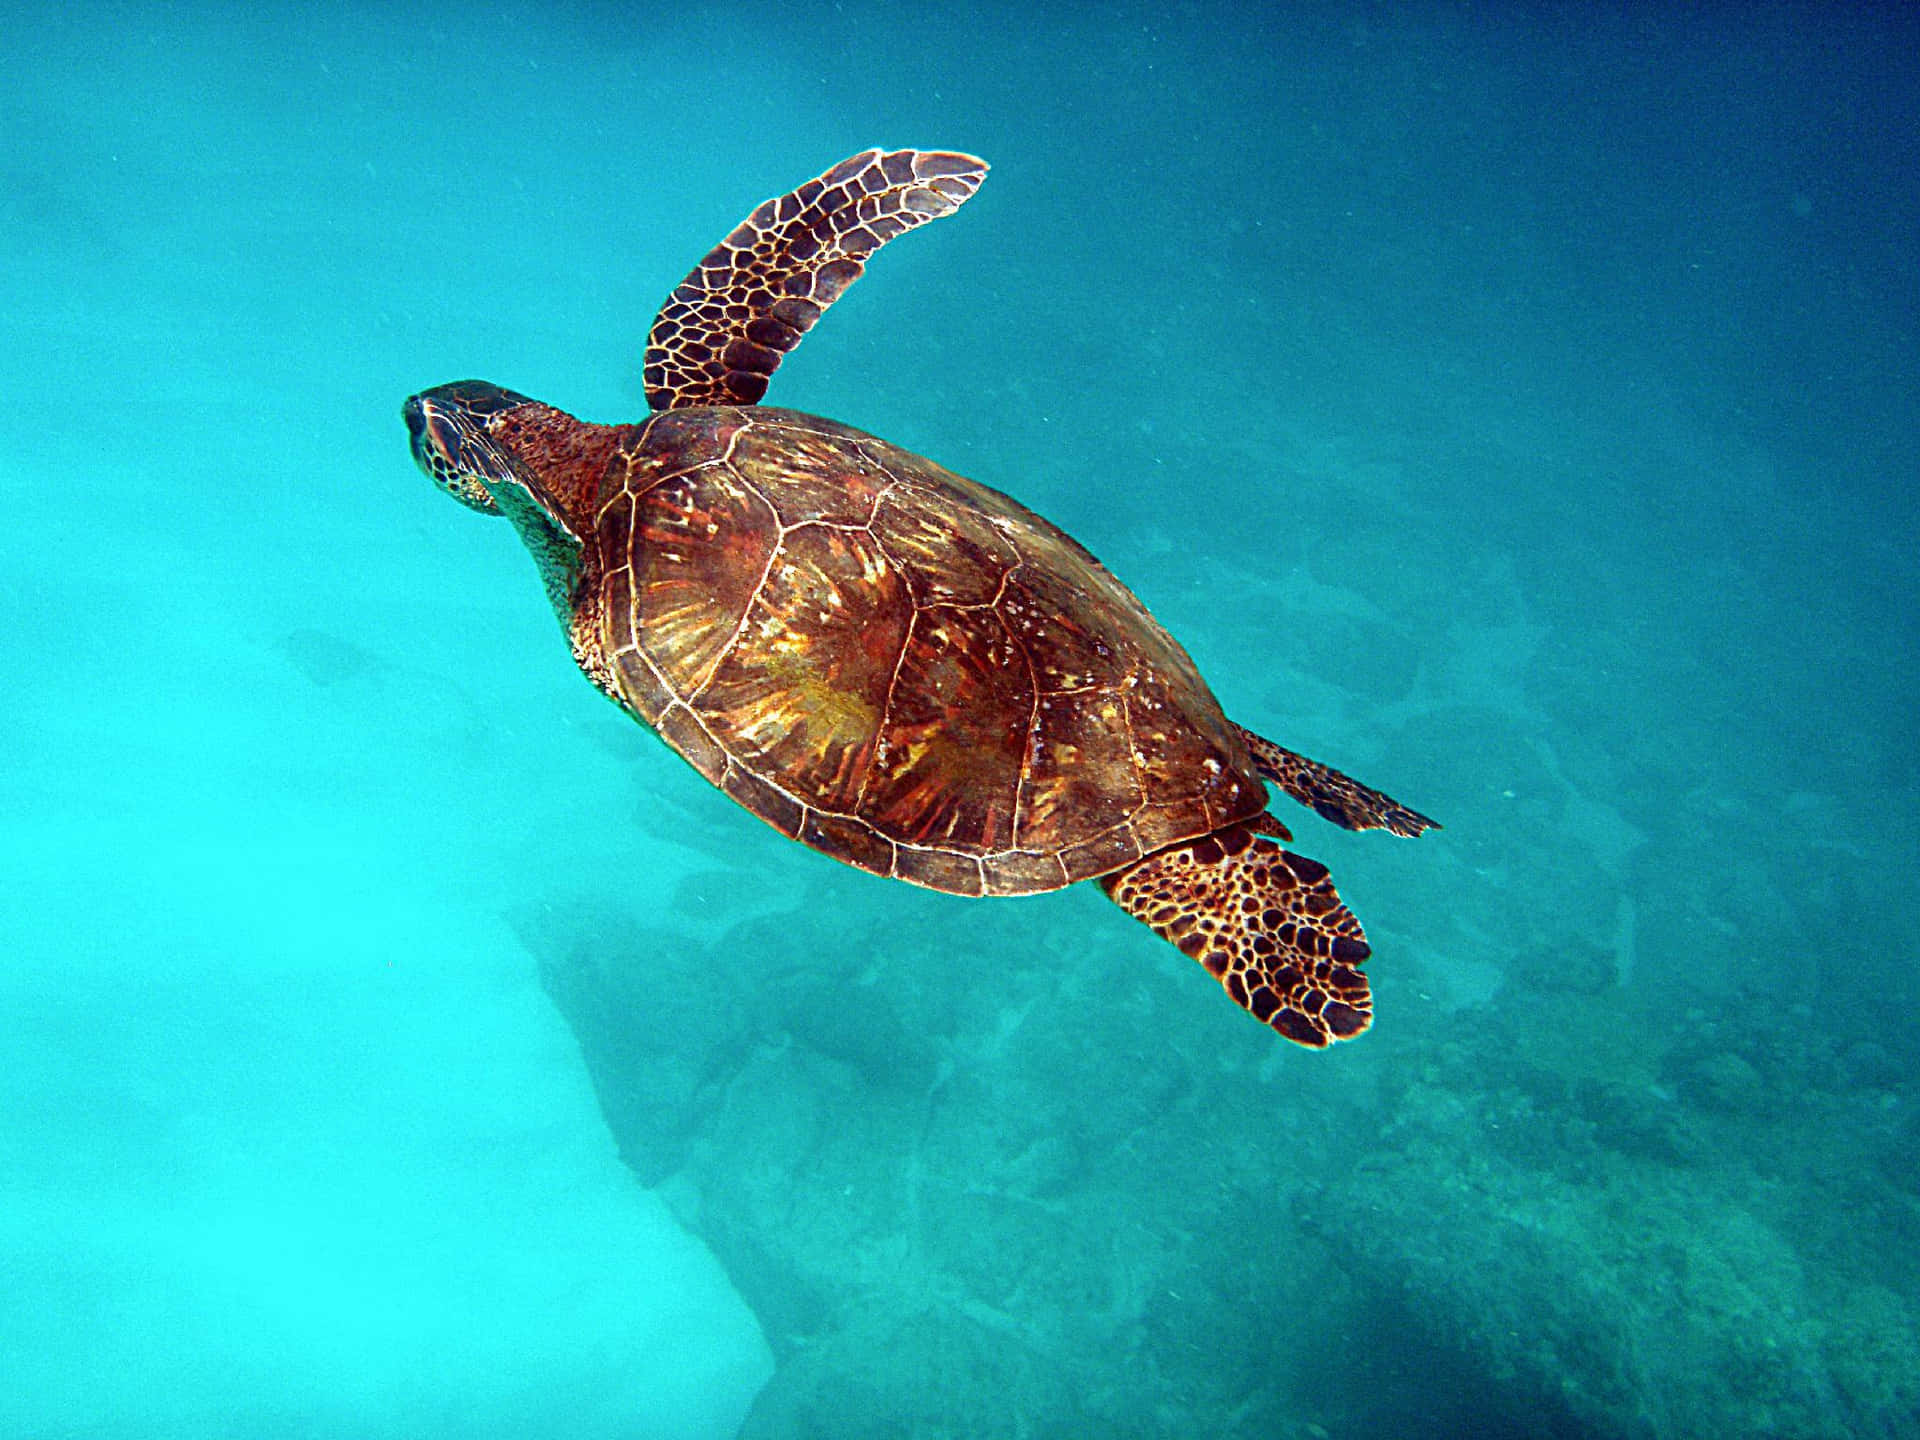 Enhavskildpadde, Der Svømmer I Havet.